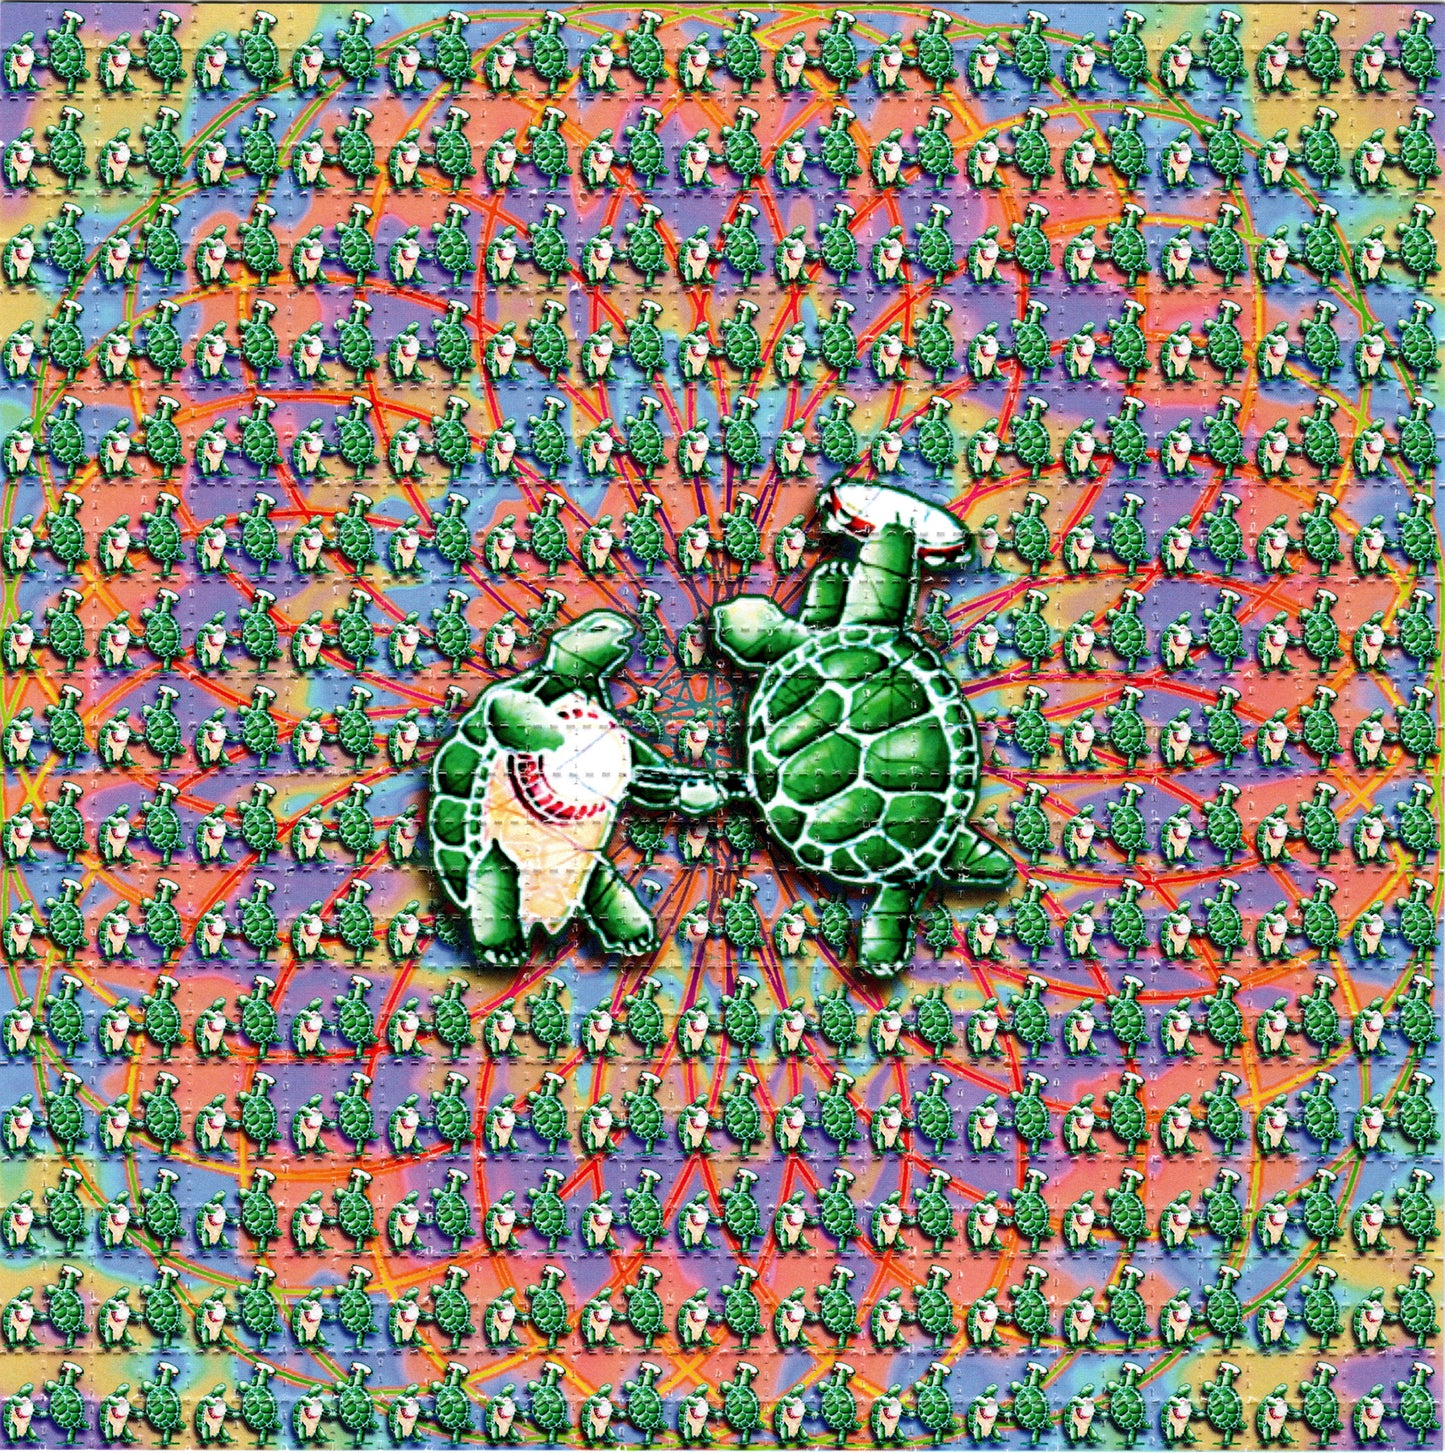 Two Dancing Green Terrapins LSD blotter art print